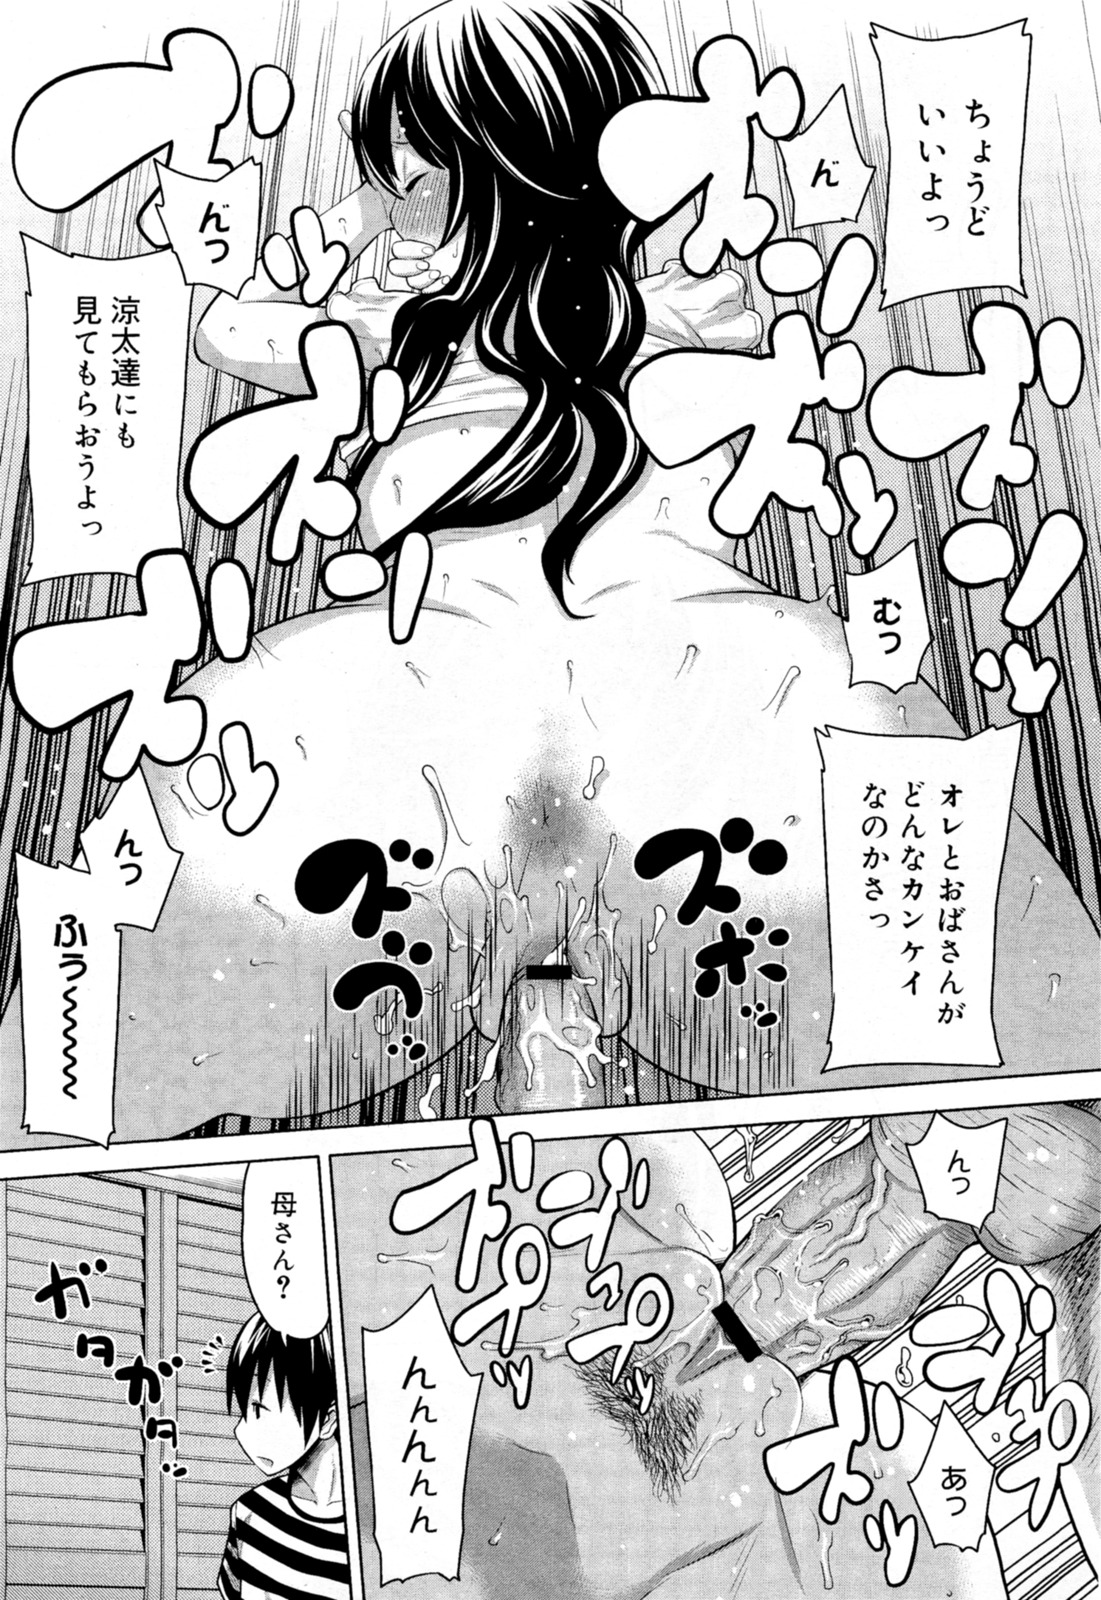 [アガタ] ナイショのかくれんぼ (コミックメガミルク Vol.18)